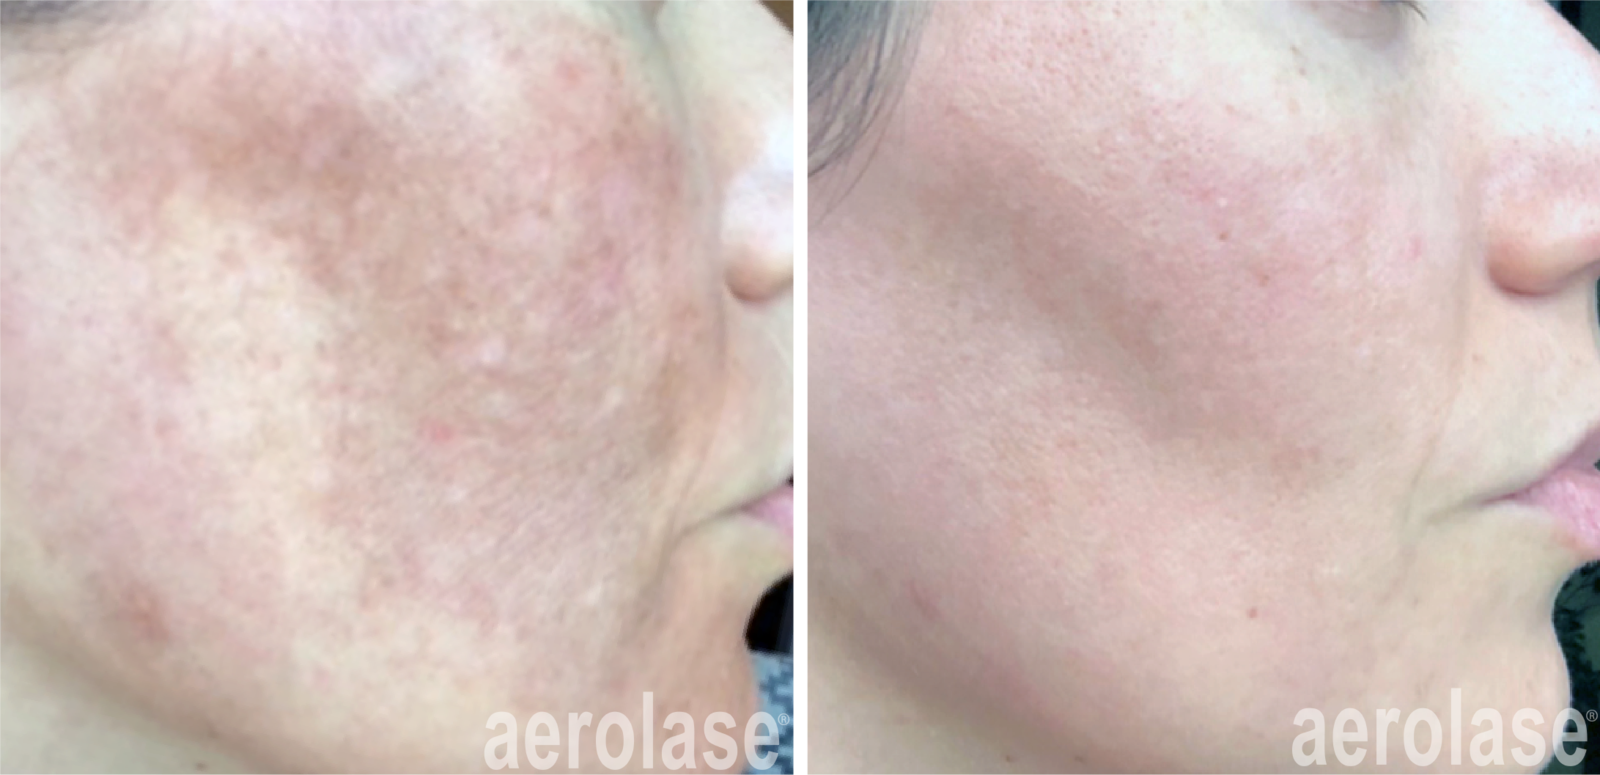 reducing melasma with aerolase laser skin resurfacing facial treatments